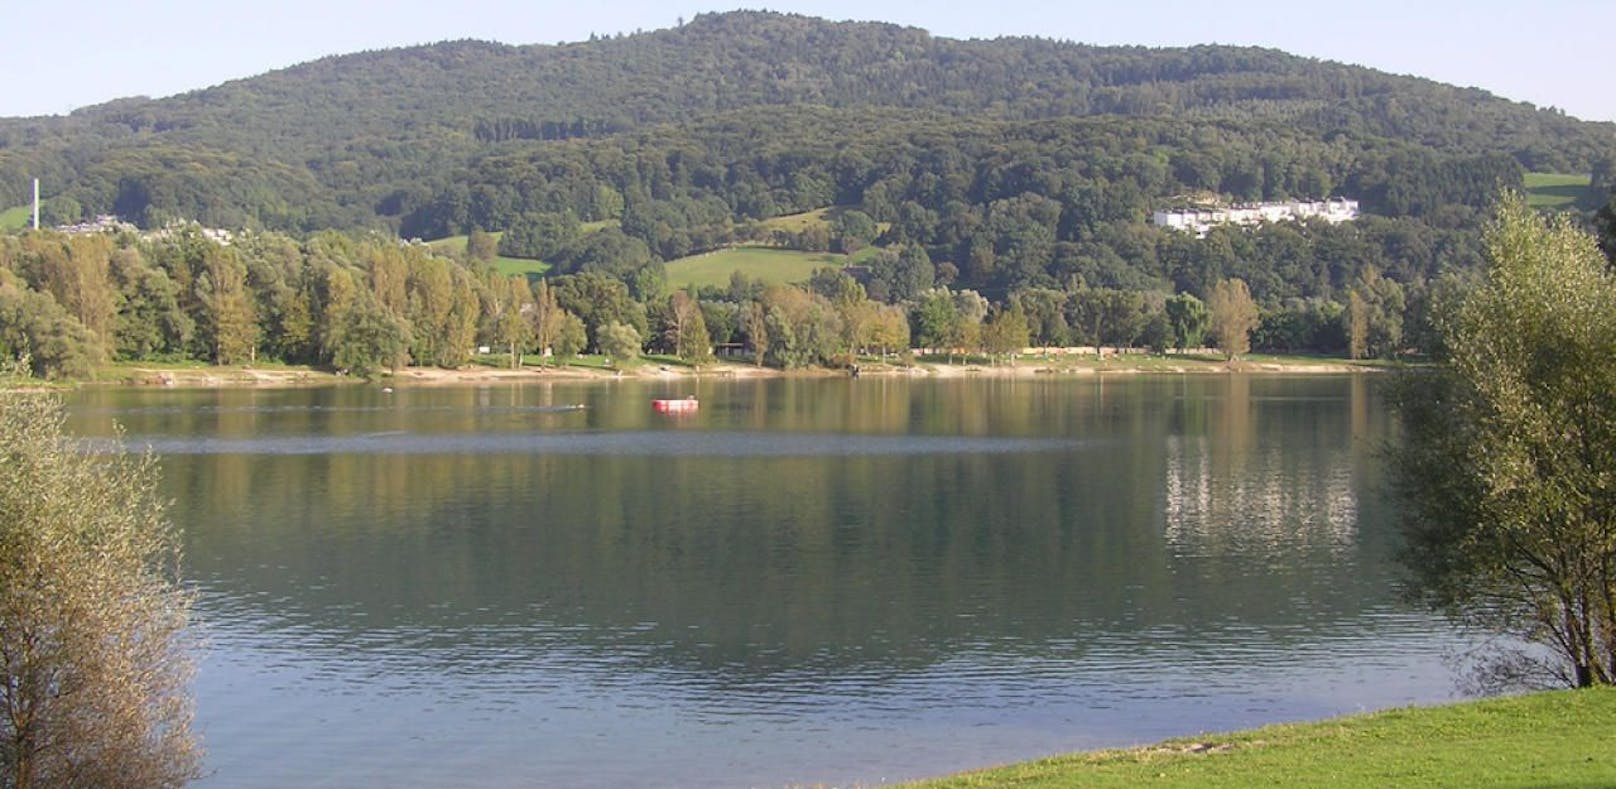 30 Grad, wurden am Wochenende im Pleschinger See gemessen. Durch das aufgehitzte Wasser unserer heimischen Gewässer entstehen viele Probleme für die Tier- und Wasserwelt. 